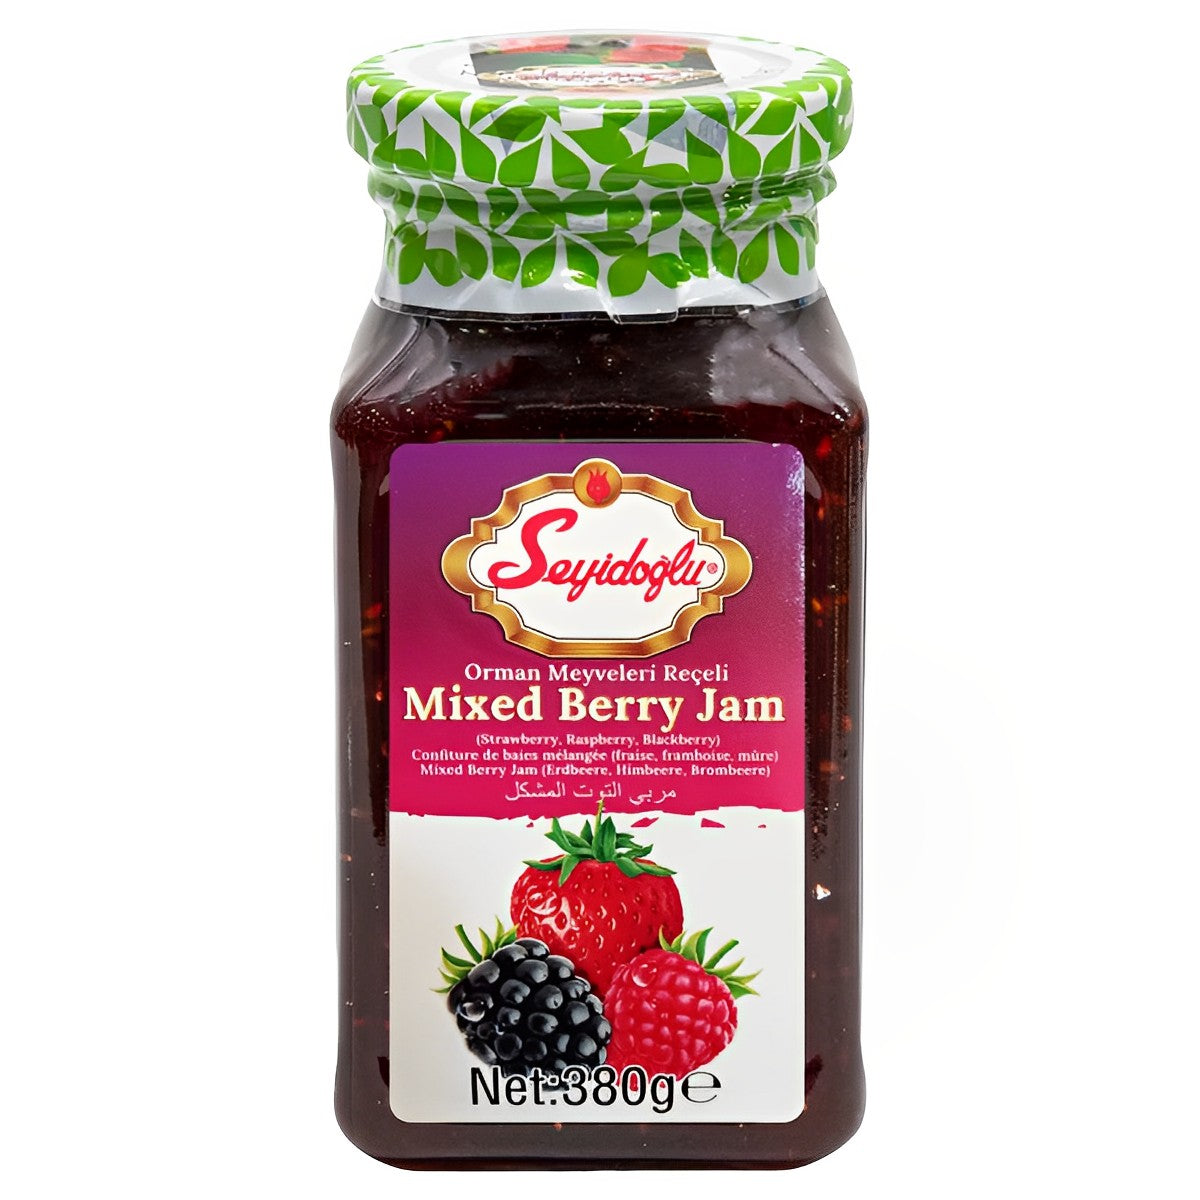 Seyidoglu - Mixed Berry Jam - 380g - Continental Food Store